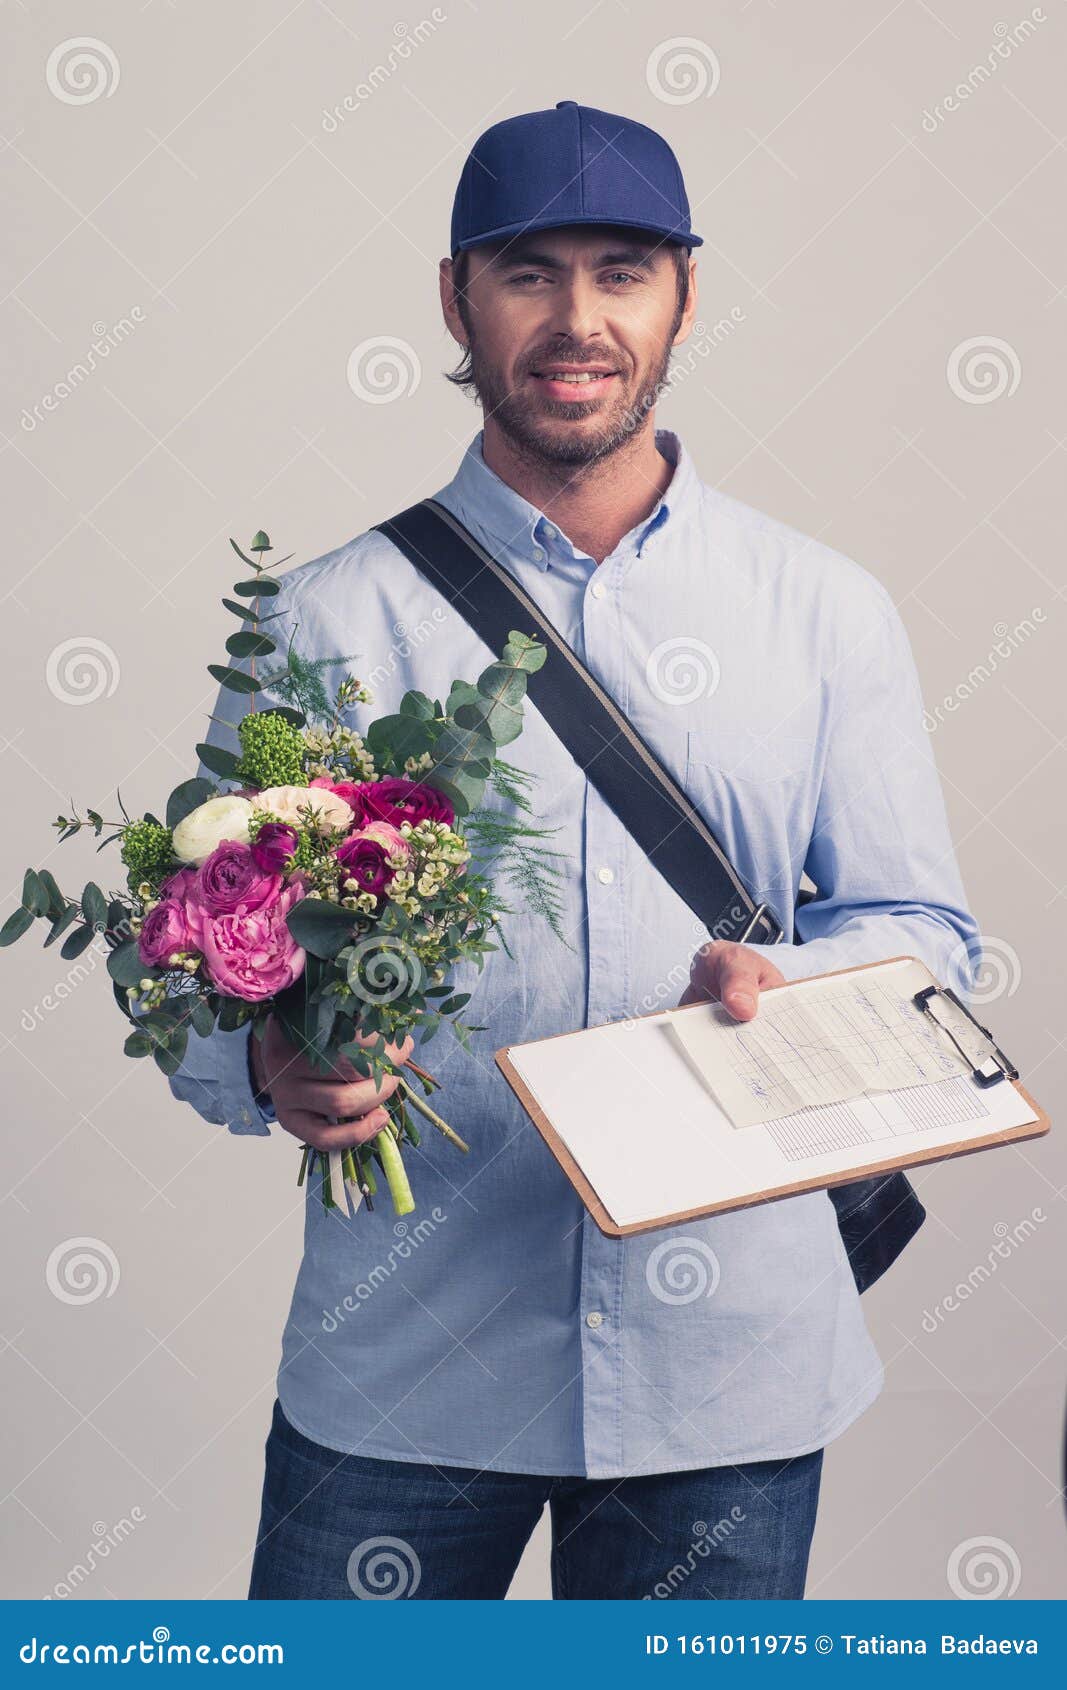 Le Livreur Du Bouquet De Fleurs Image stock - Image du fleur, masculin:  161011975